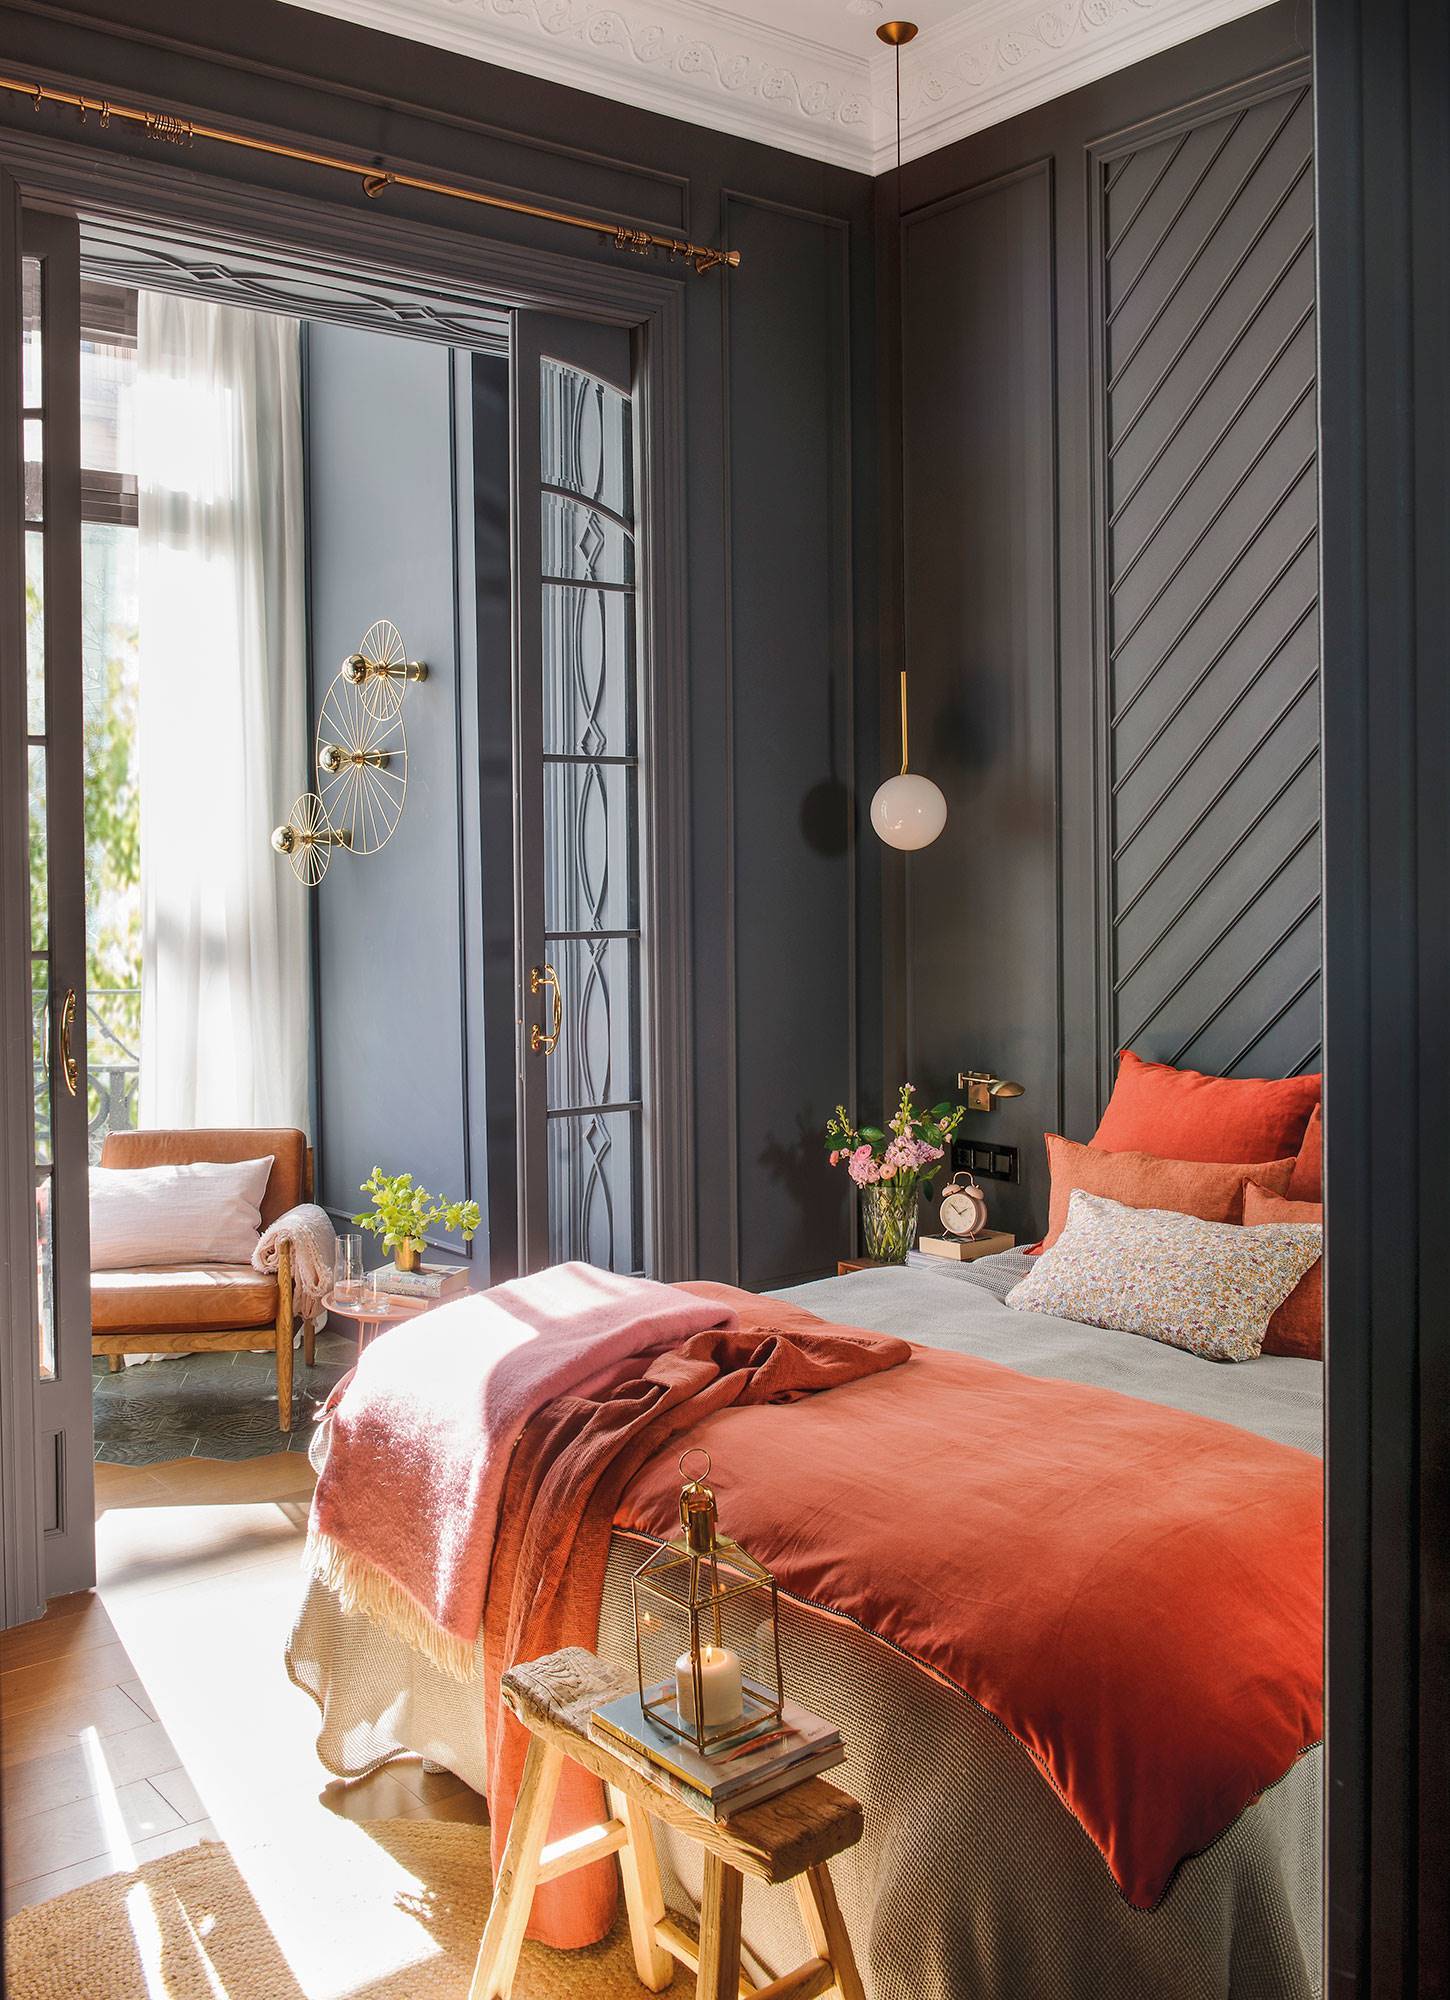 Dormitorio con pared del cabecero en color gris y con molduras en espiga  00492057